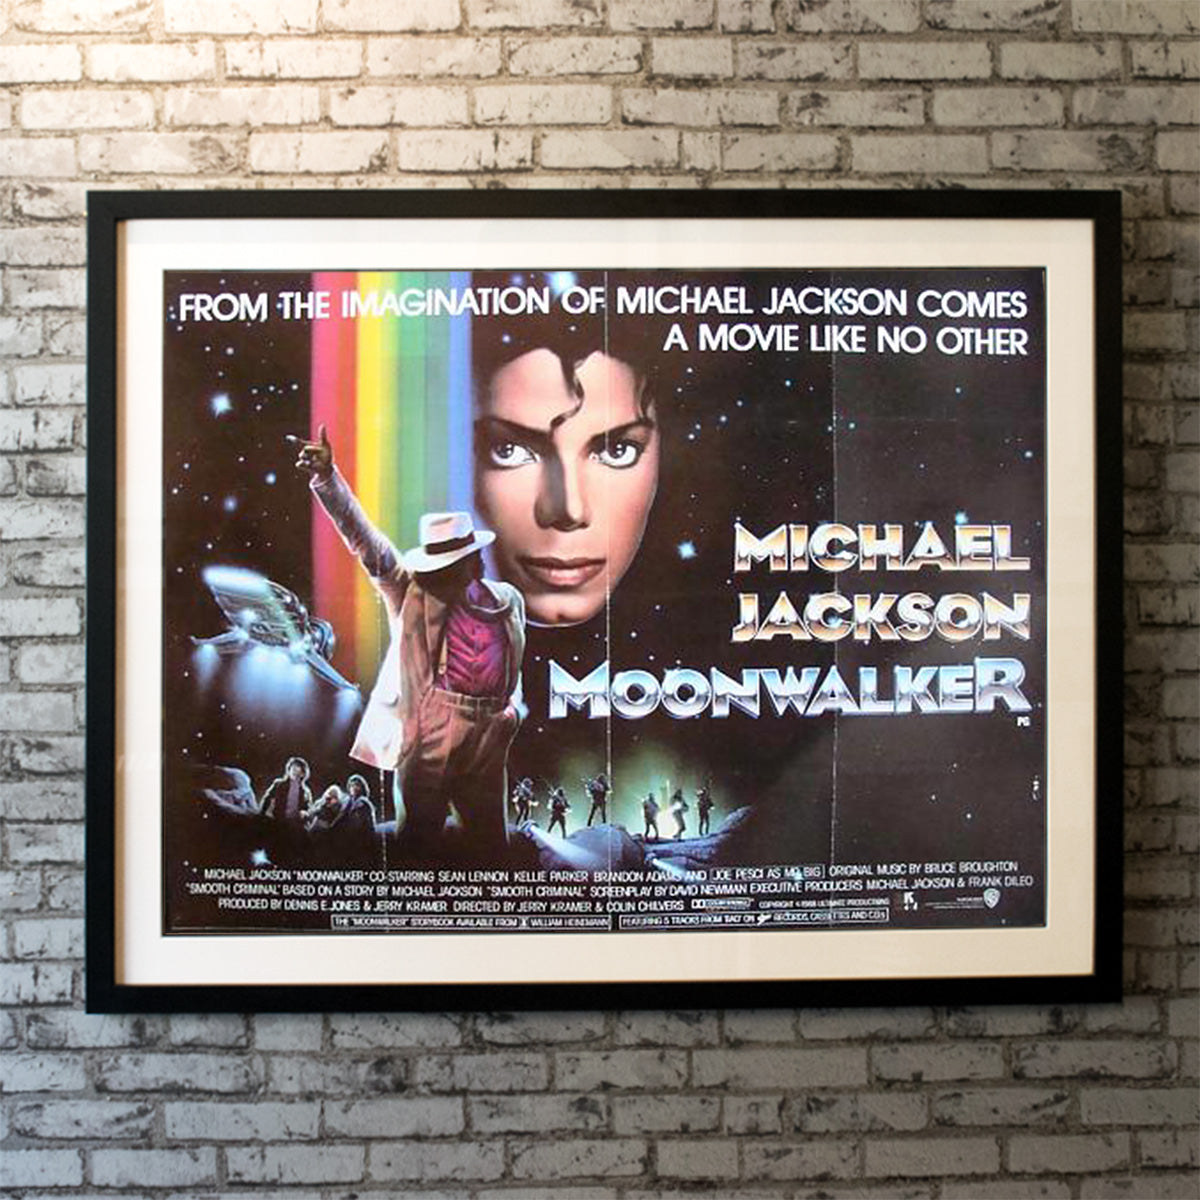 Original Movie Poster of Moonwalker (1988)